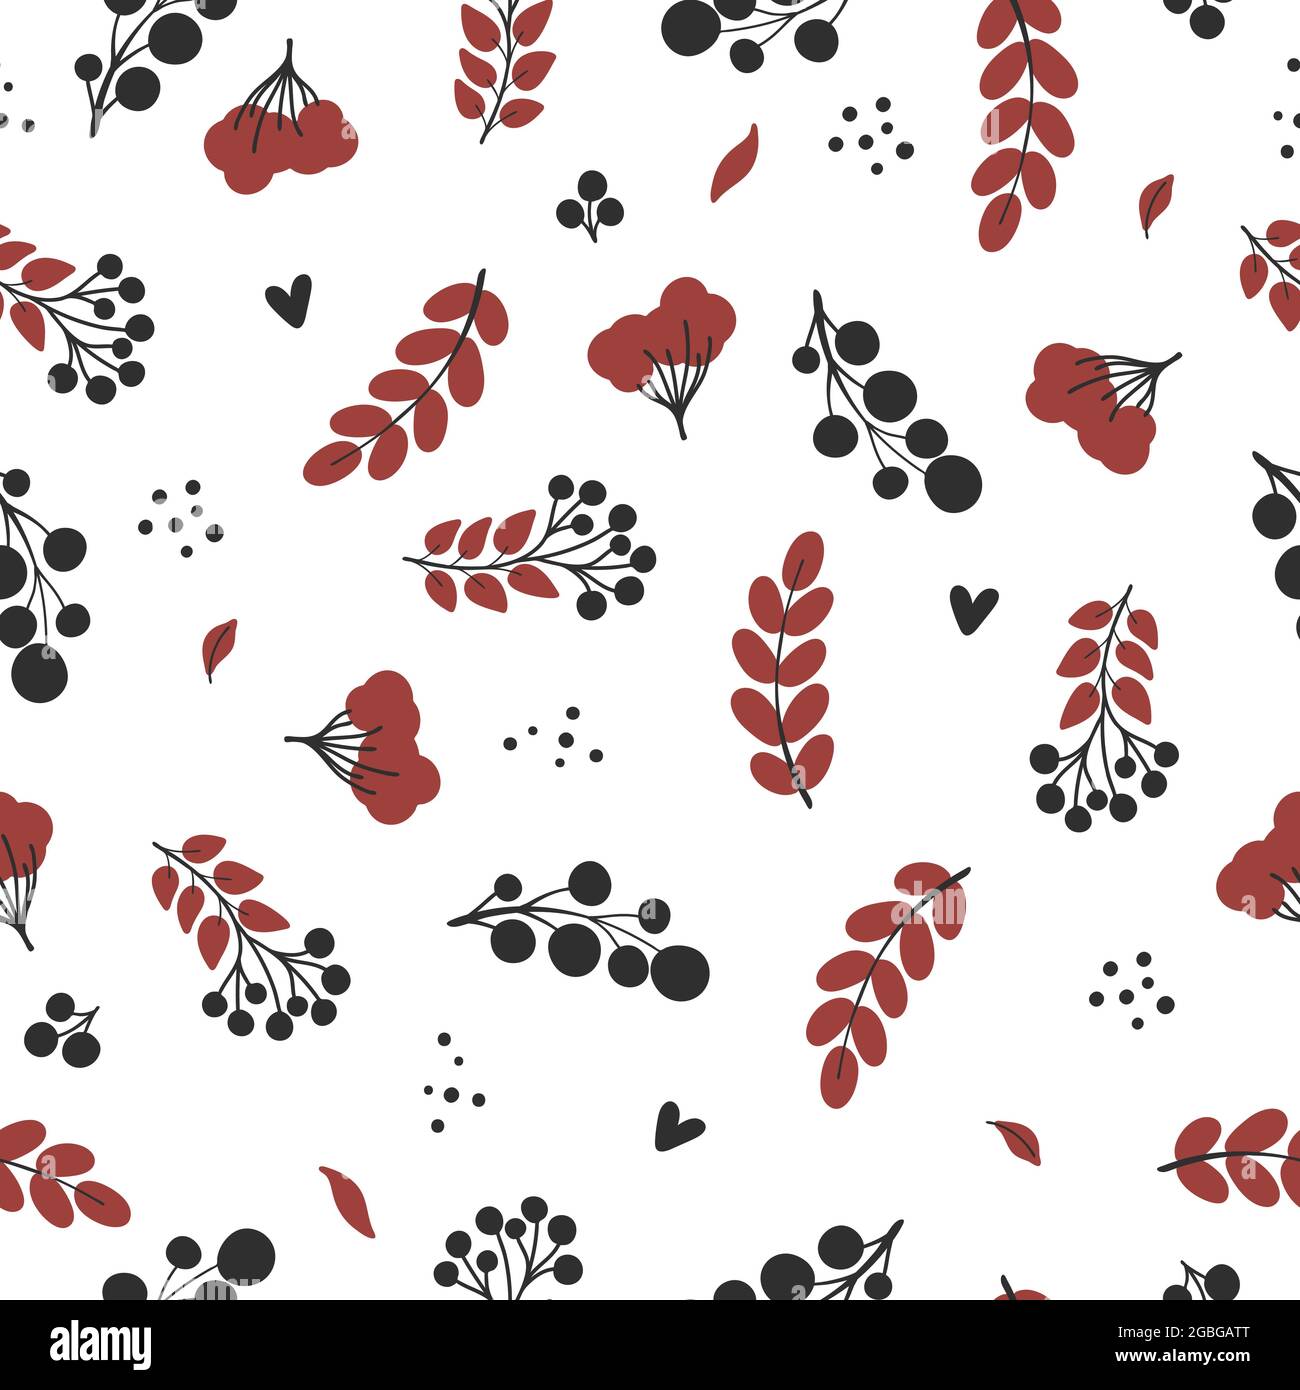 Herbstblätter und Beeren. Schwarze und rote Elemente auf weißem Hintergrund. Vektor von Hand gezeichnetes nahtloses Muster Stock Vektor